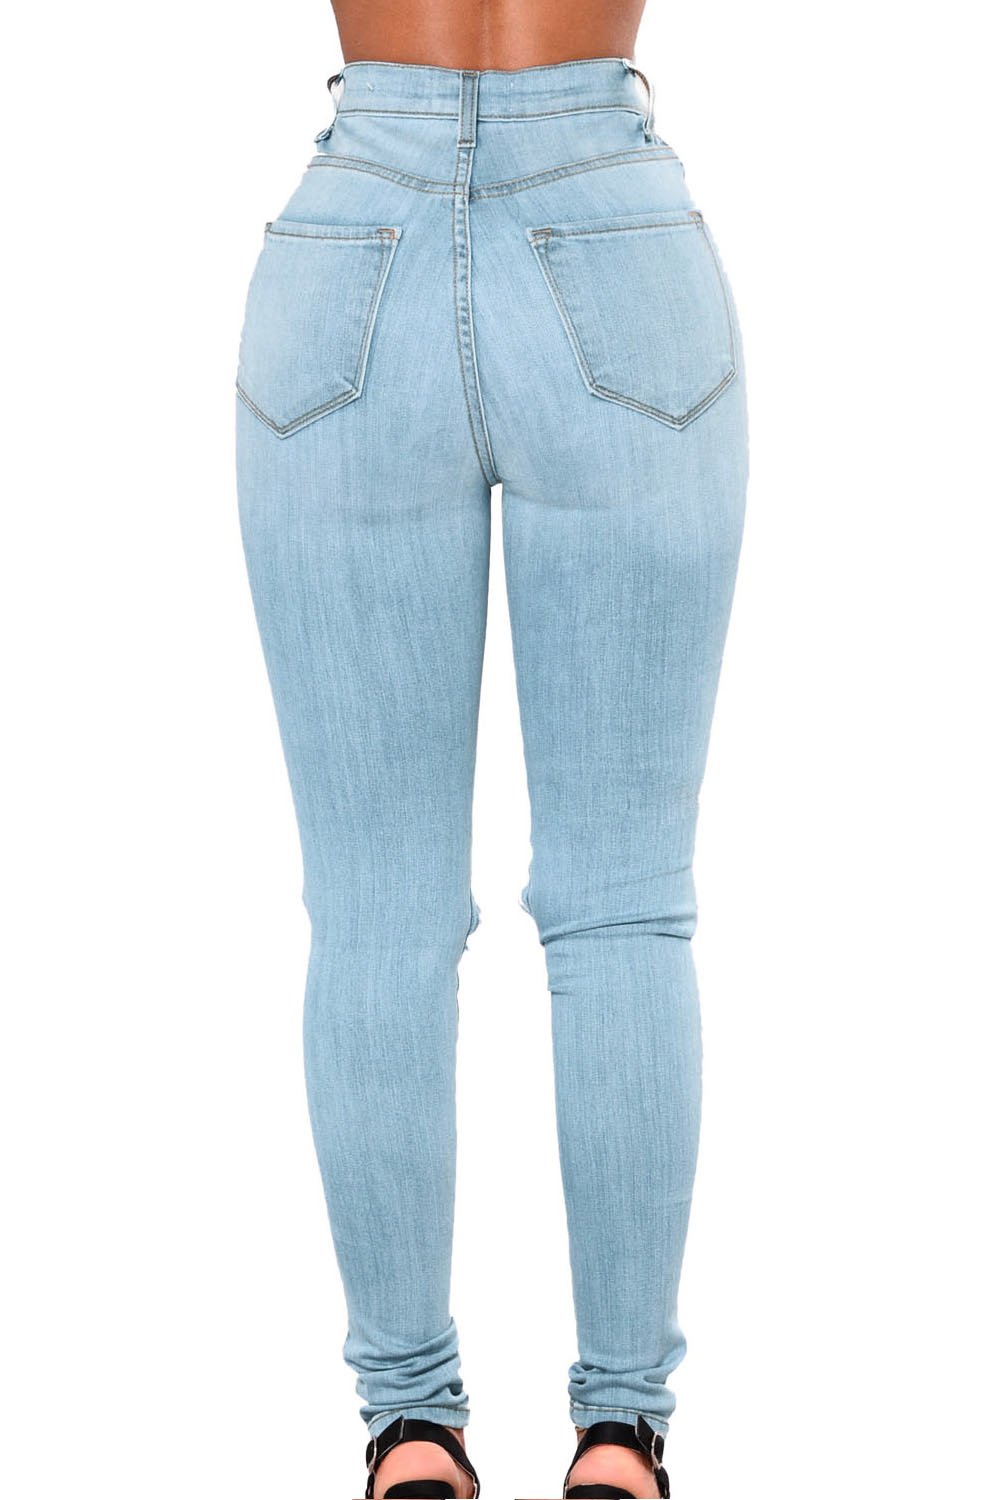 Валберис купить джинсы большого размера. Gloria Levis брюки. F5 джинсы женские ID: 123510 артикул: 19786.